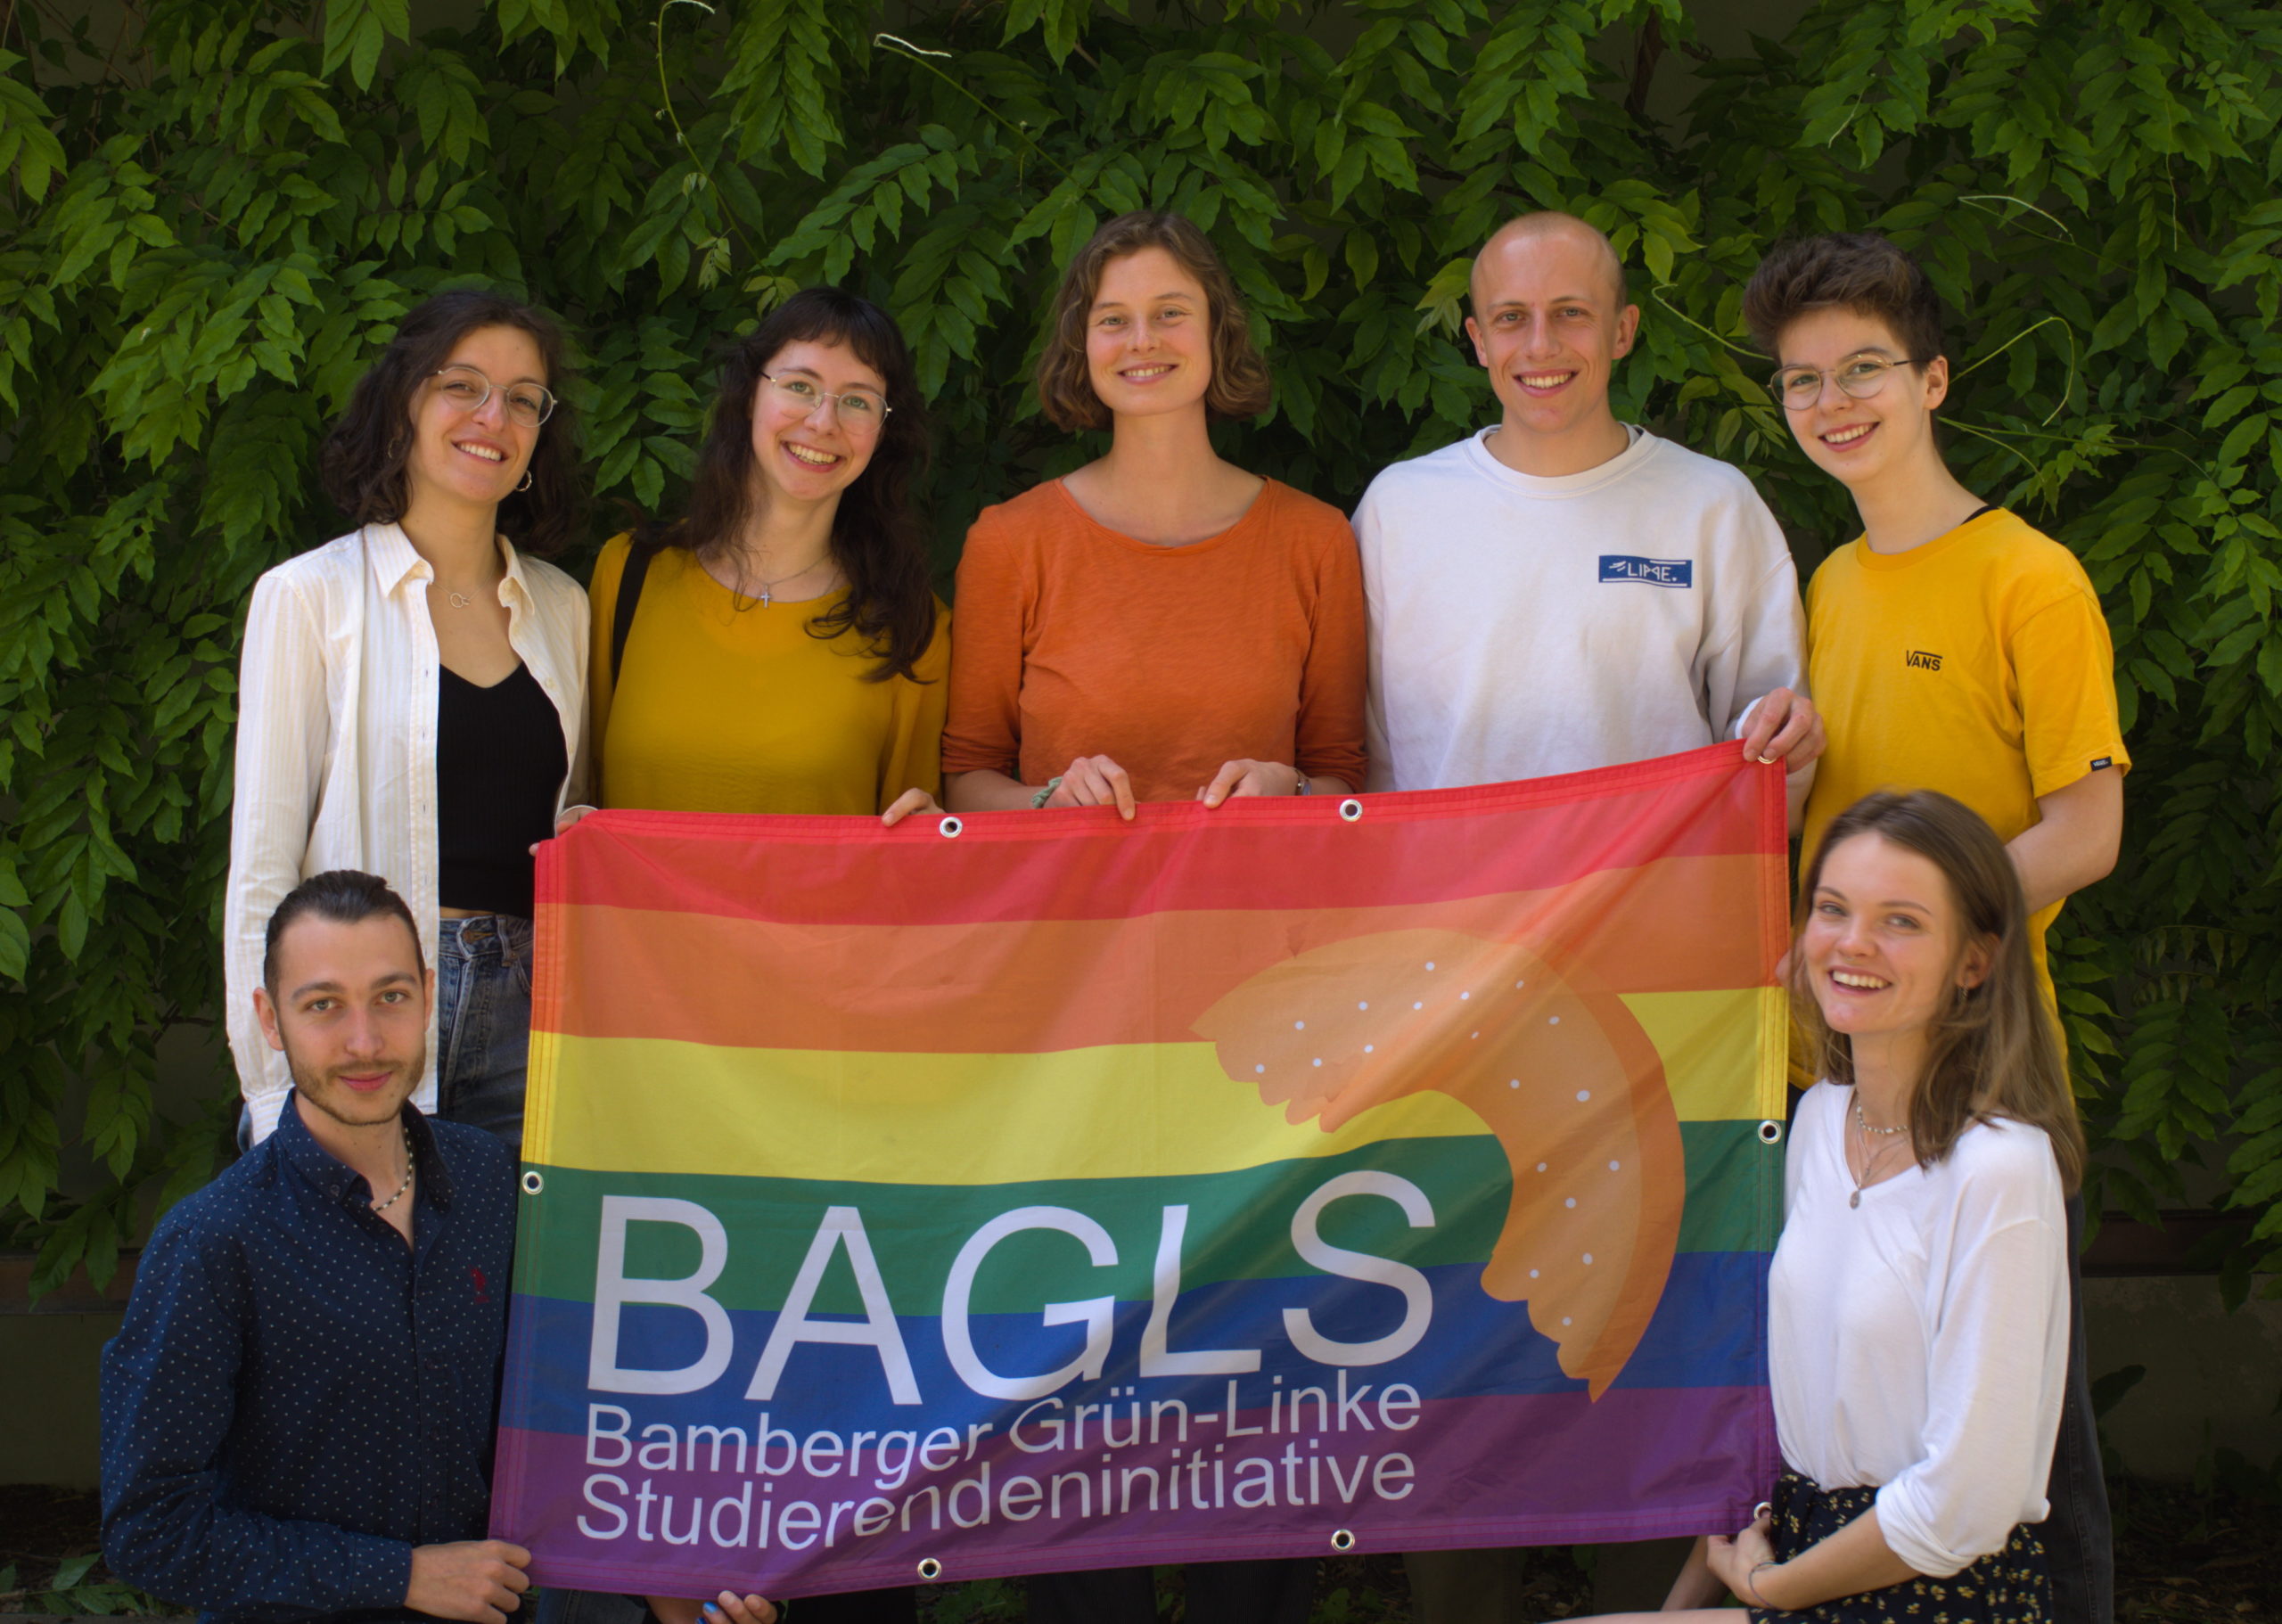 Die Mitglieder der BAGLS mit Regenbogen-BAGLS Flagge